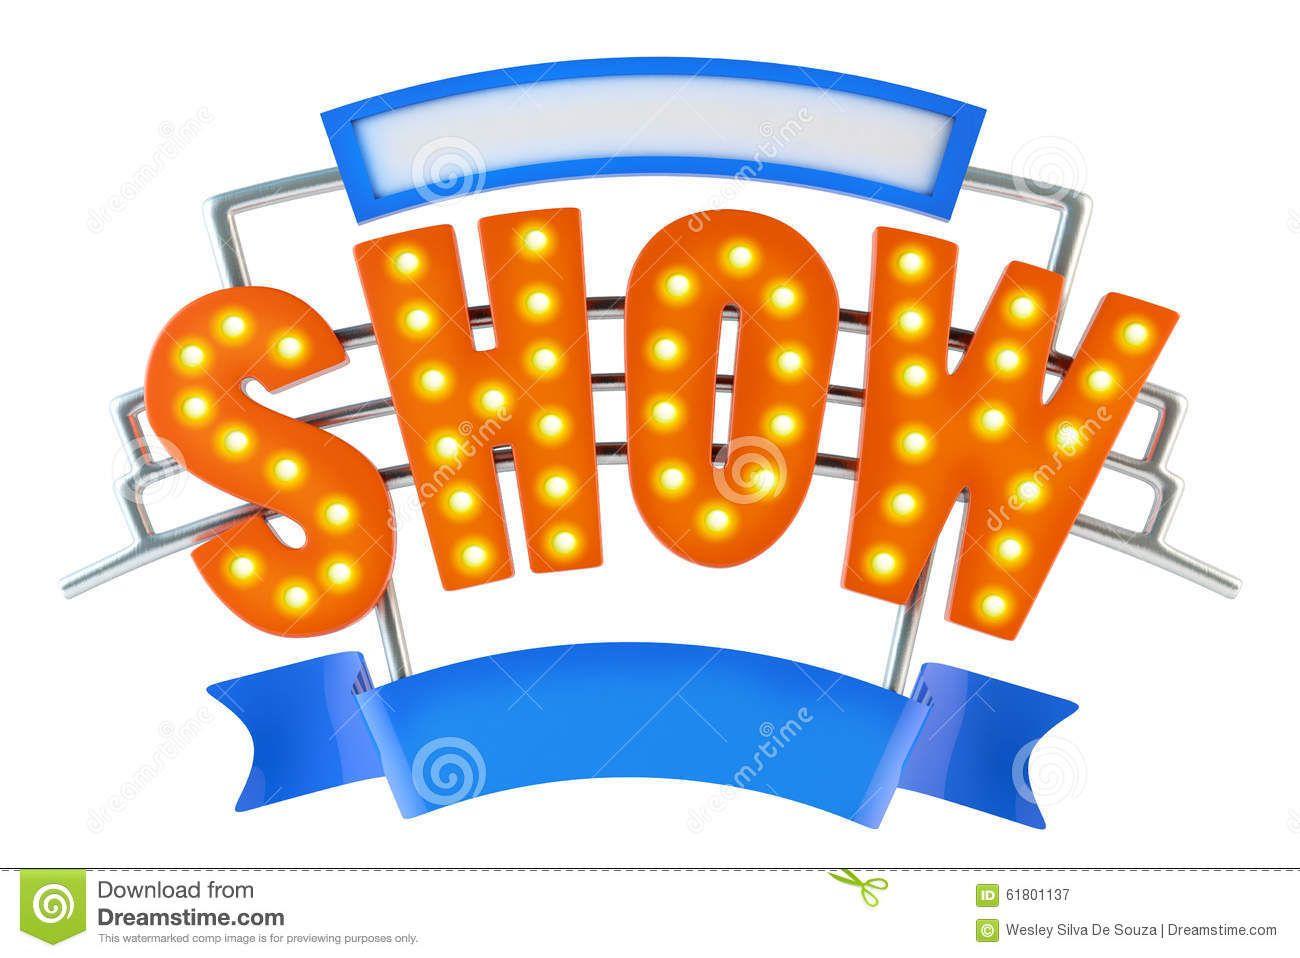 Show Logo - Show Logos